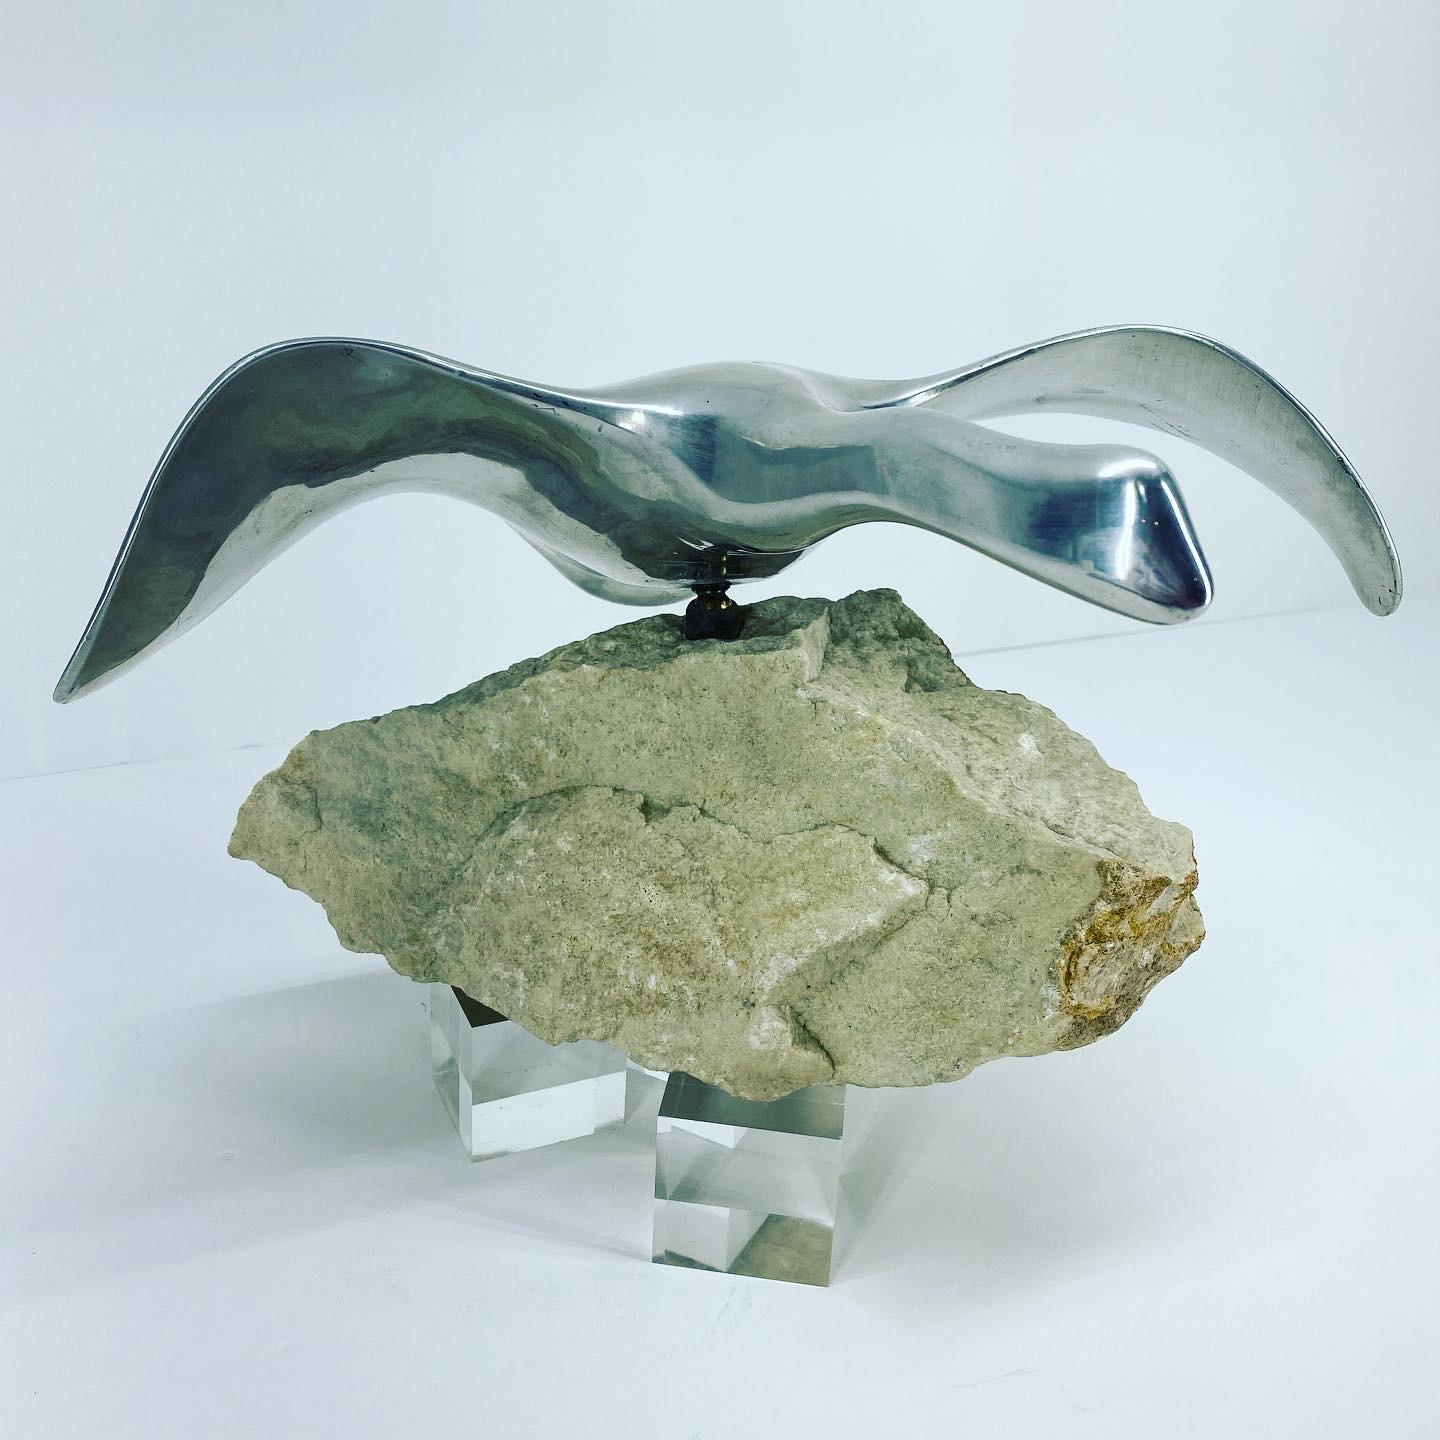 canada goose sculpture